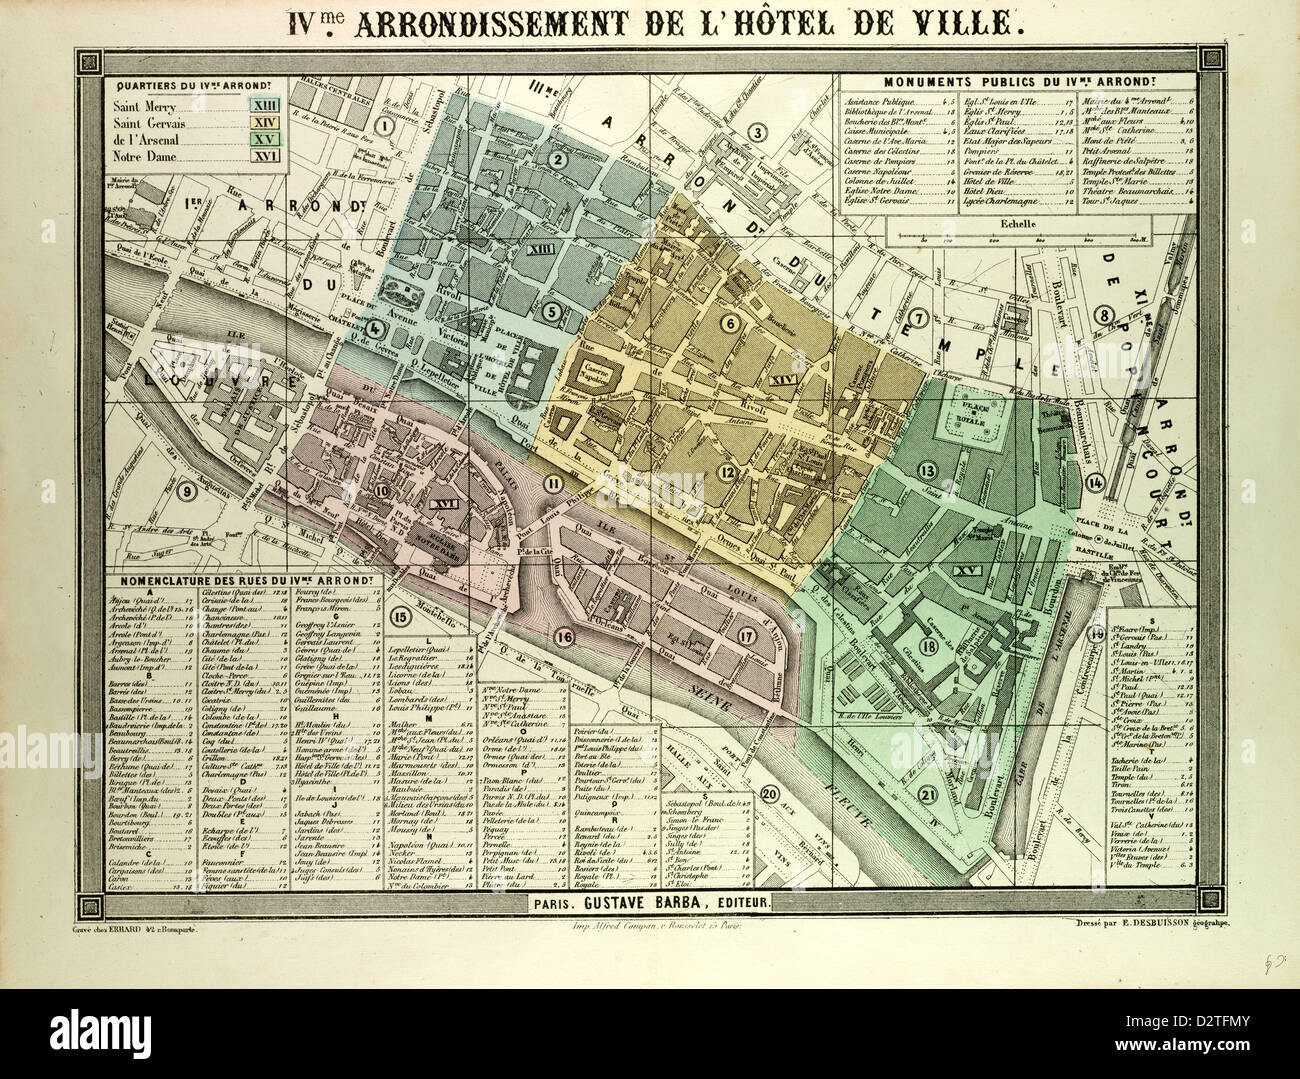 MAP OF THE 4TH ARRONDISSEMENT DE L'HÔTEL DE VILLE PARIS FRANCE Stock Photo